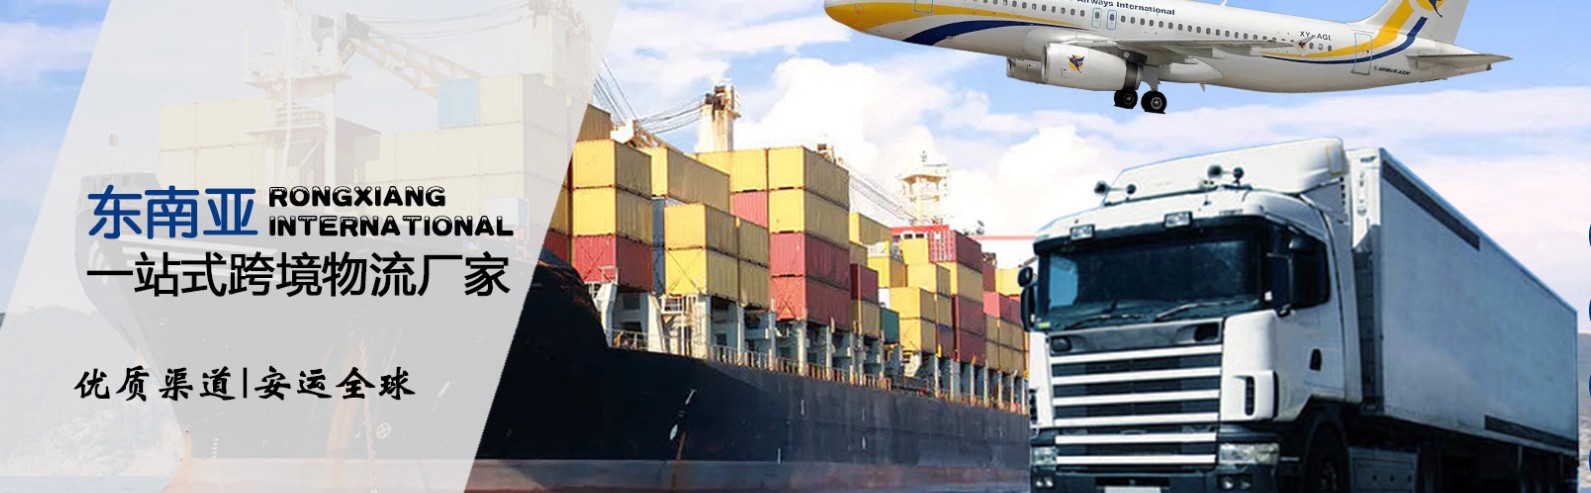 缅甸拼箱价格 缅甸海运代理 缅甸散货拼箱价格 缅甸船期查询国际物流货运代理 